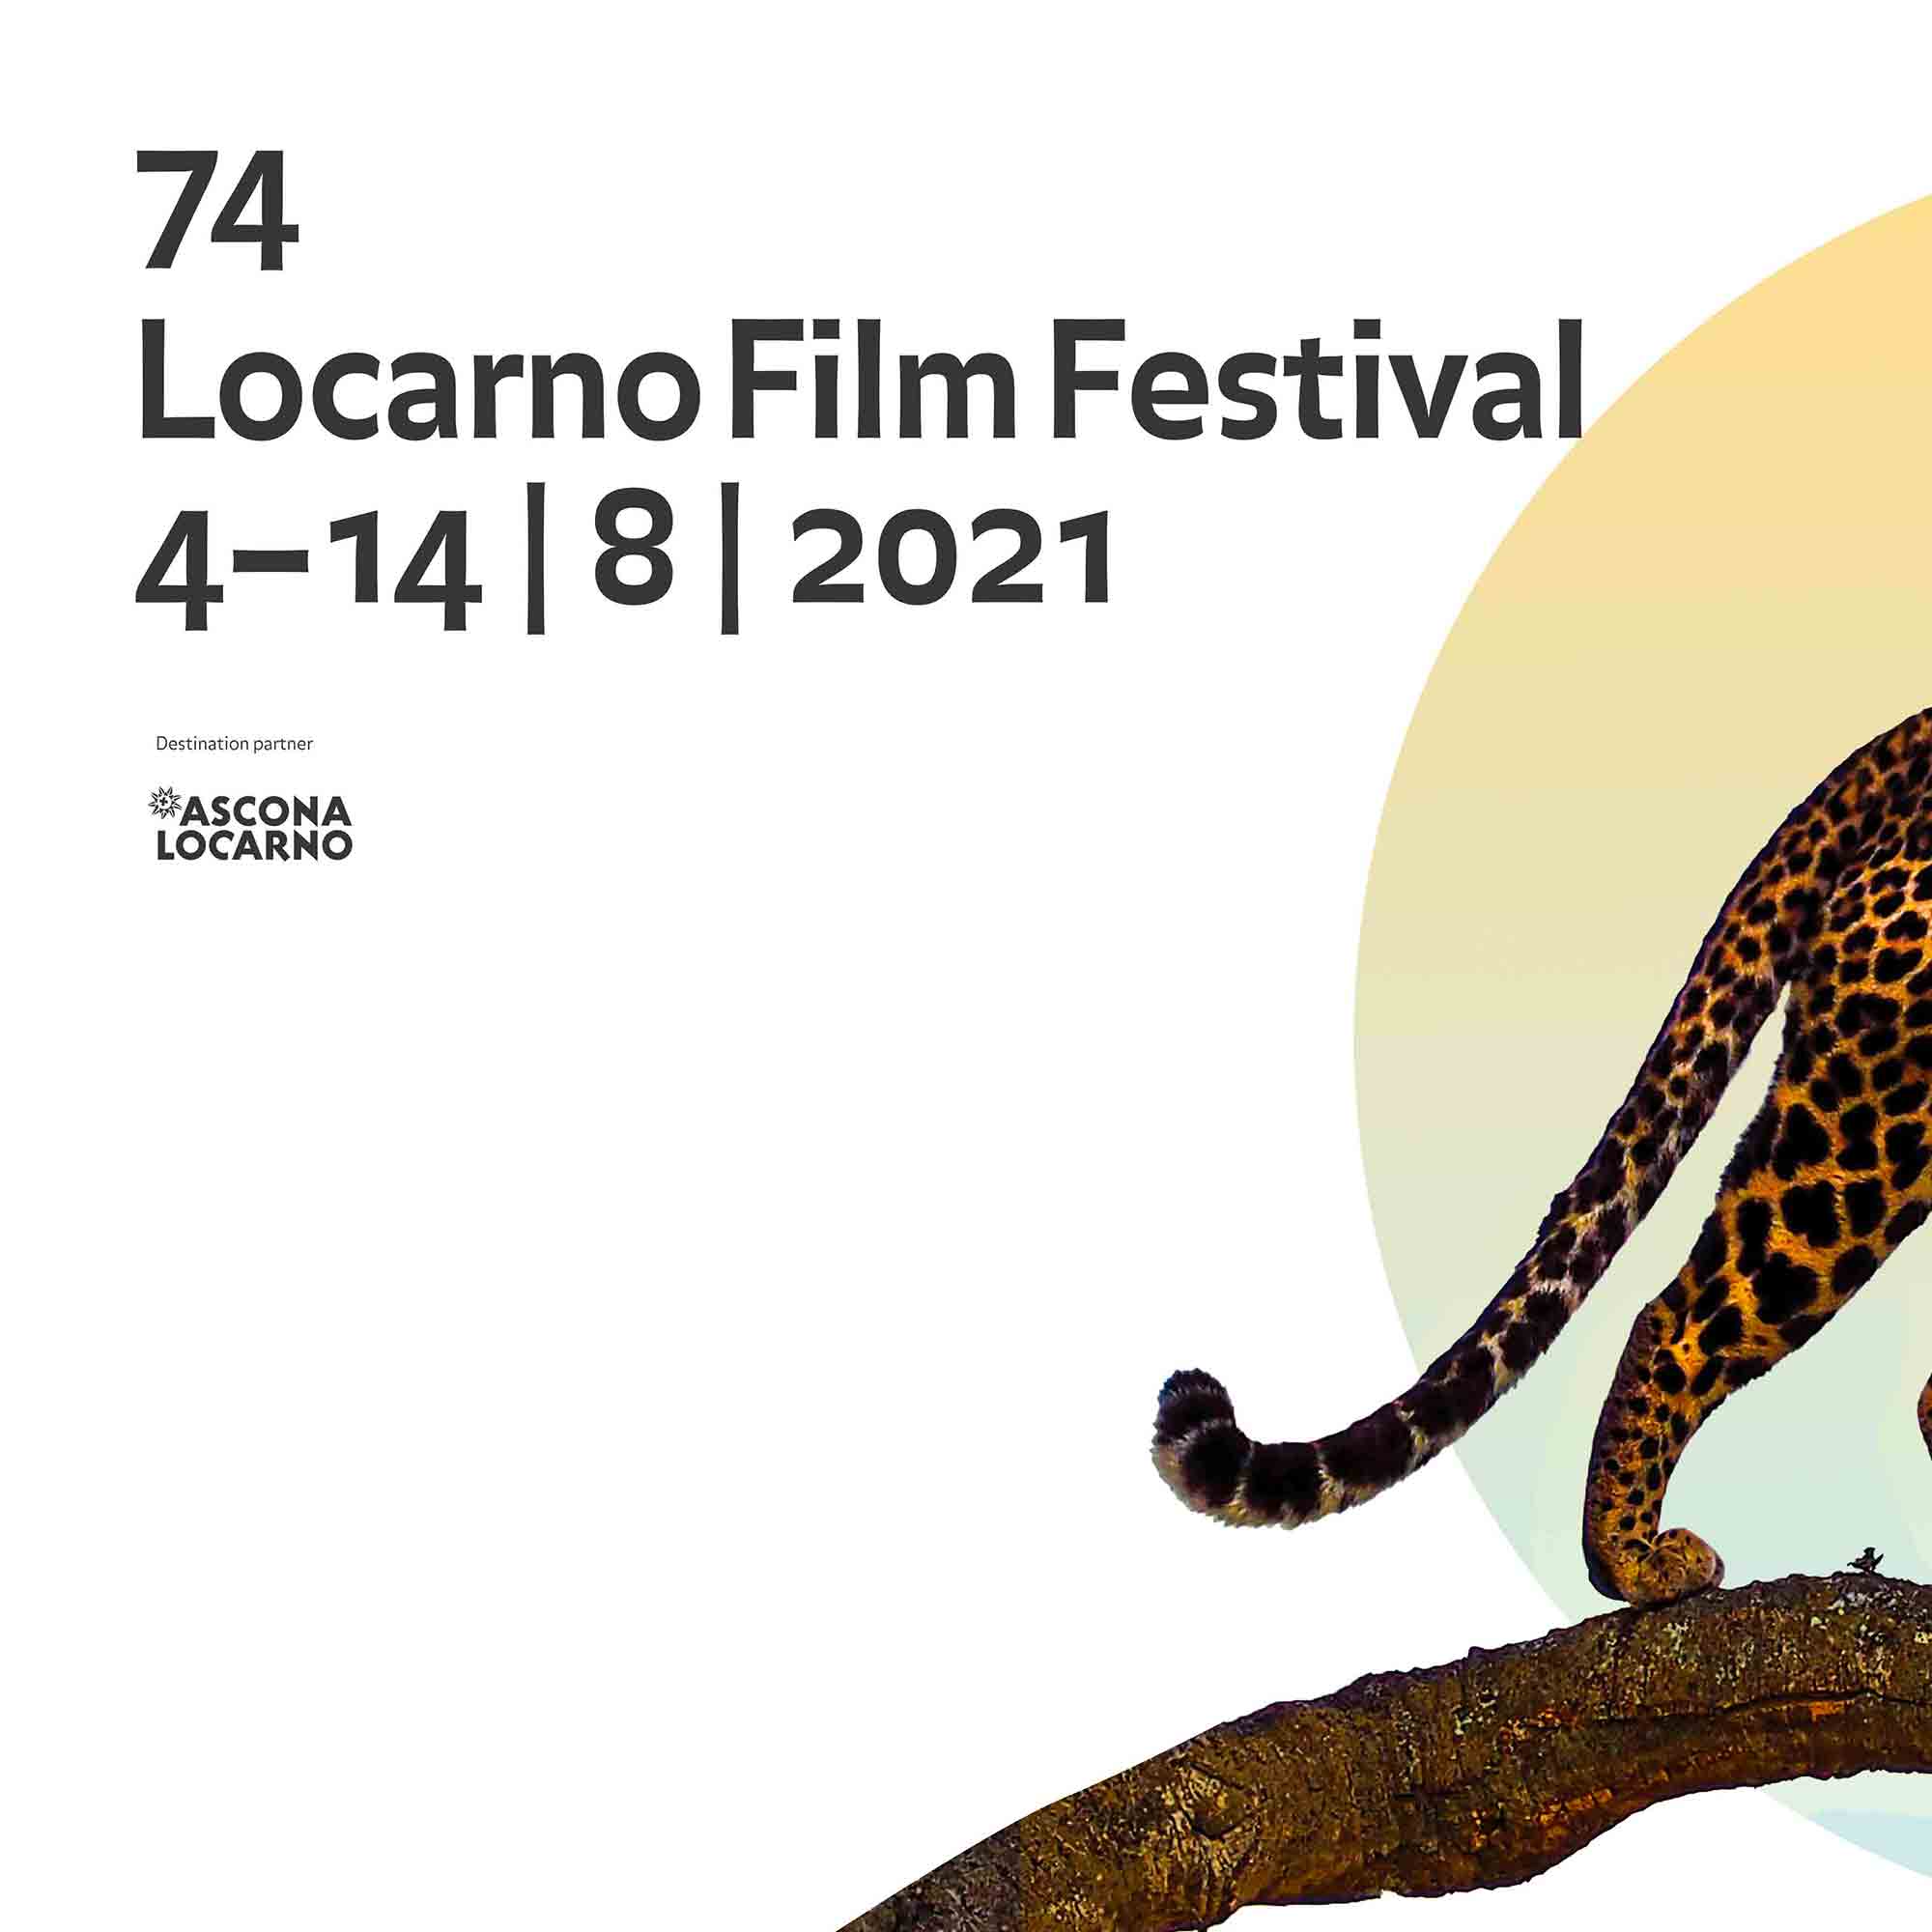 LOCARNO FILM FESTIVAL 2021